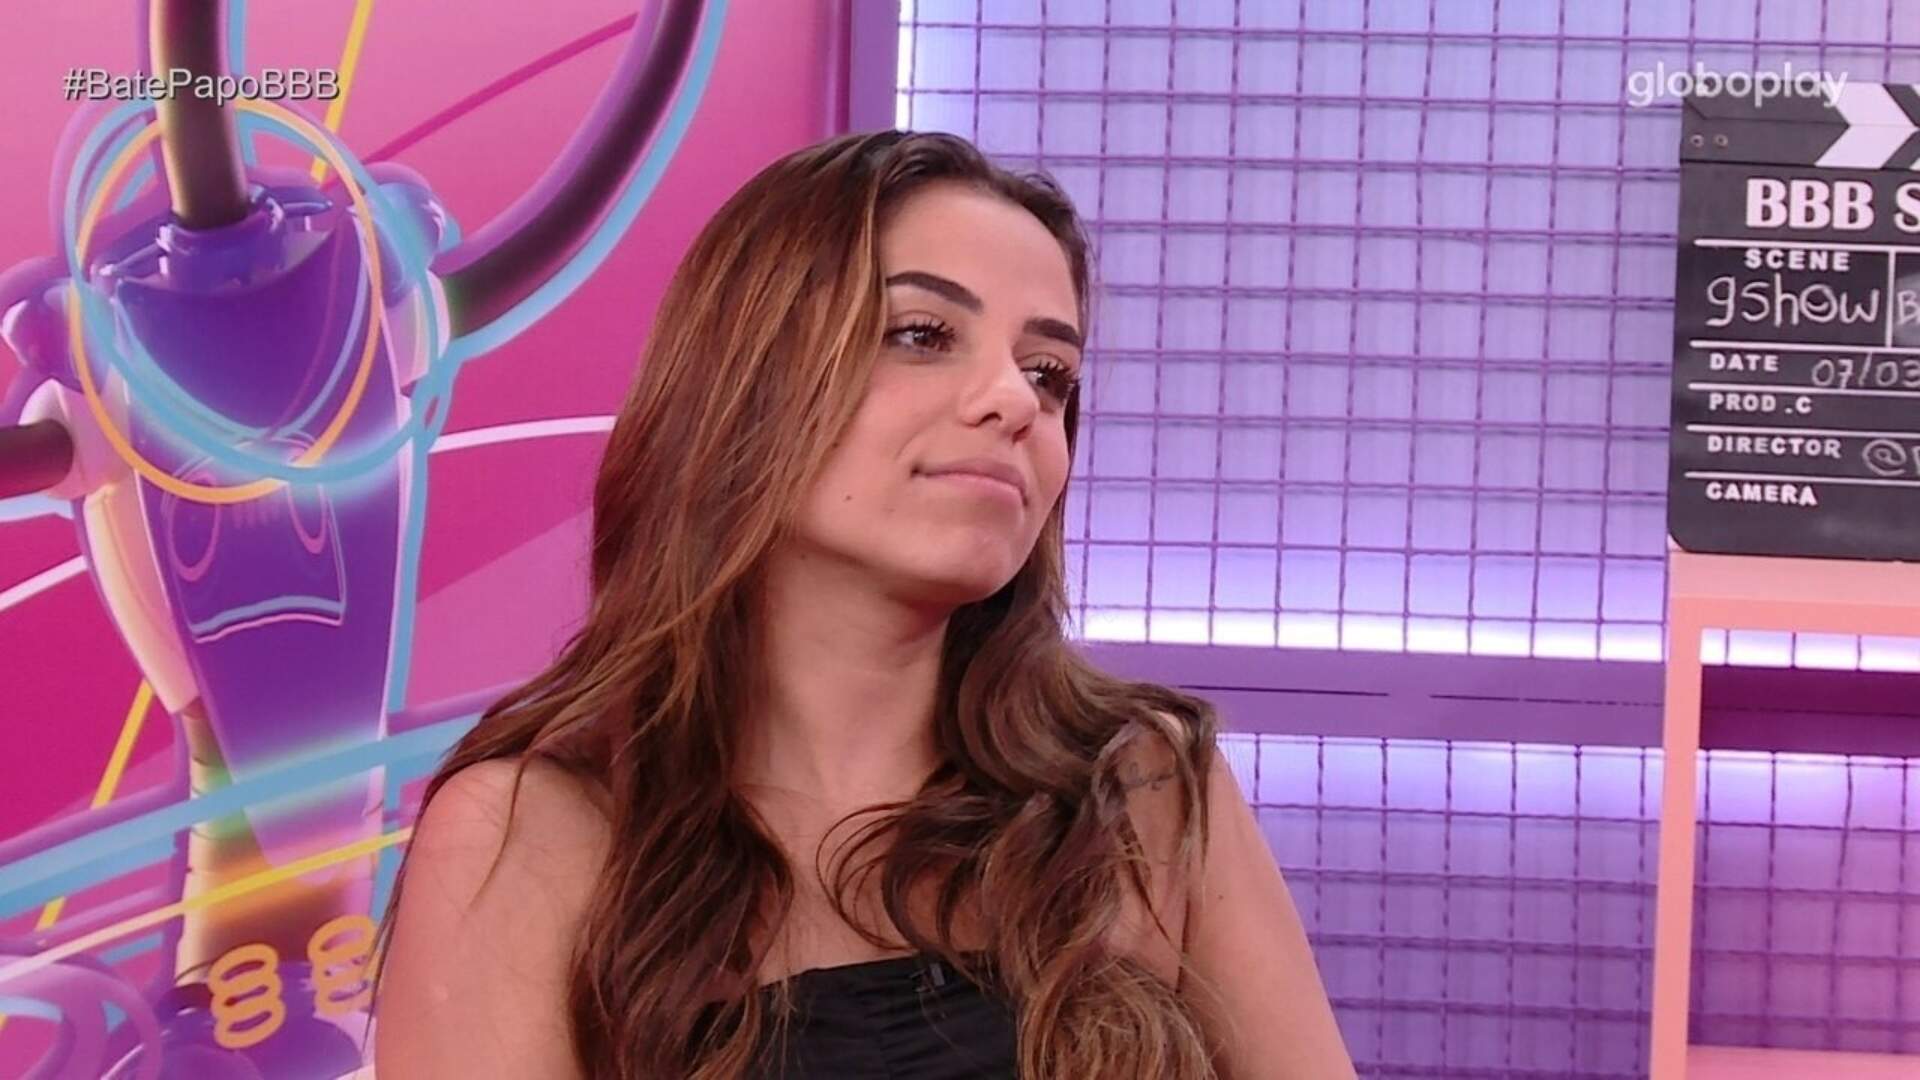 BBB 23: Eliminada, Key Alves revela planos pós reality show: “É isso que eu quero da minha vida” - Metropolitana FM